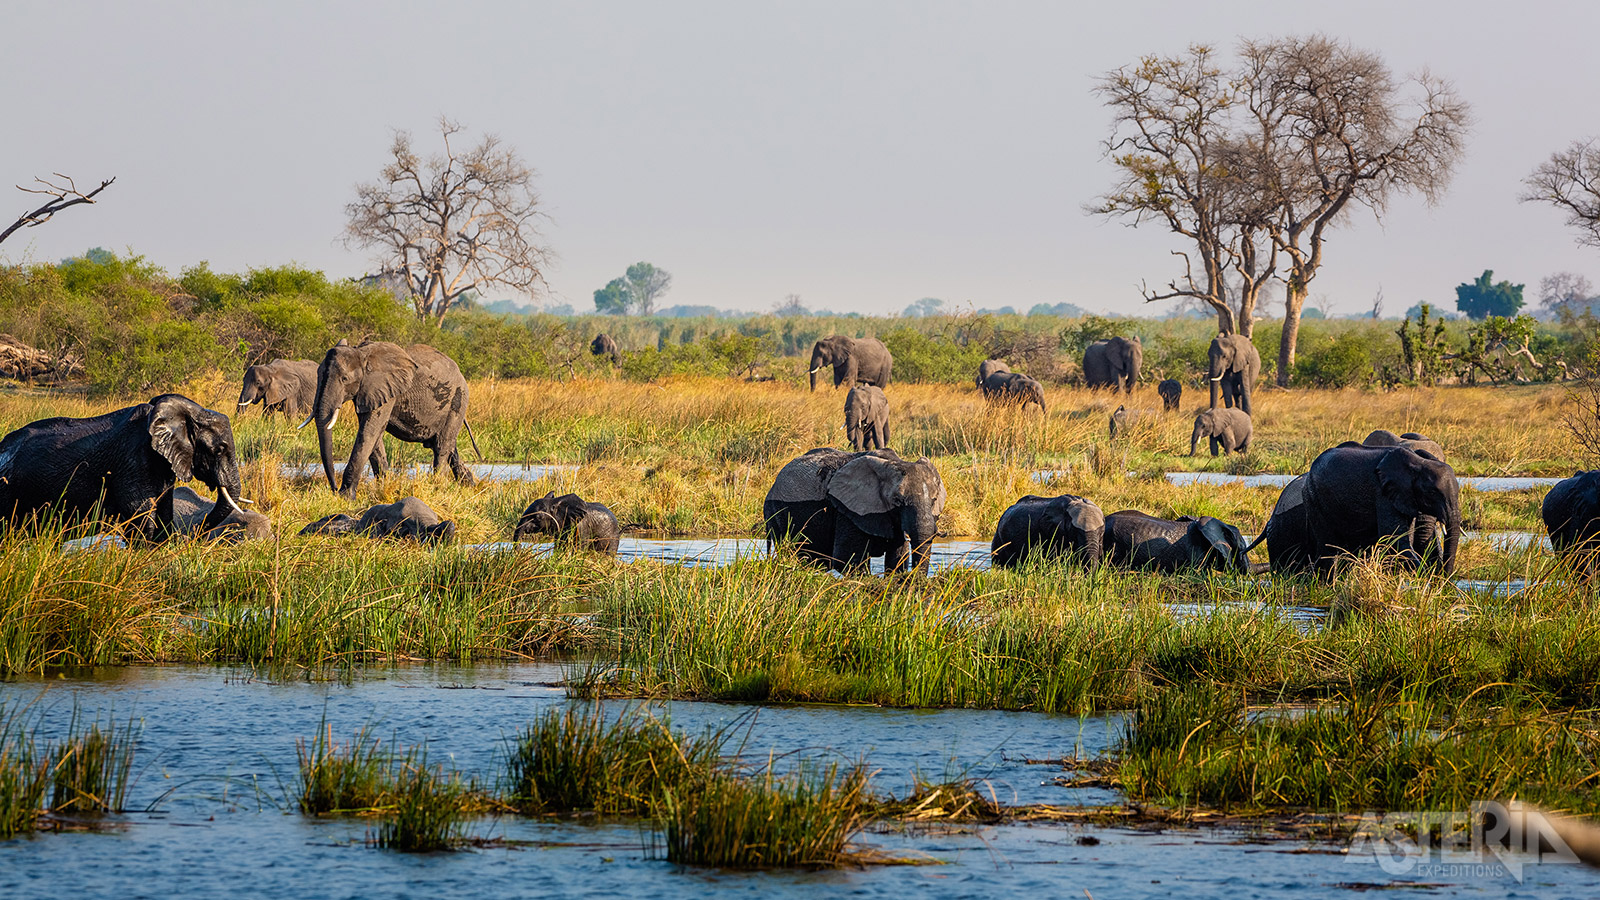 Het moerasland van Bwabwata National Park is een uniek gebied dat erg doet denken aan Botswana